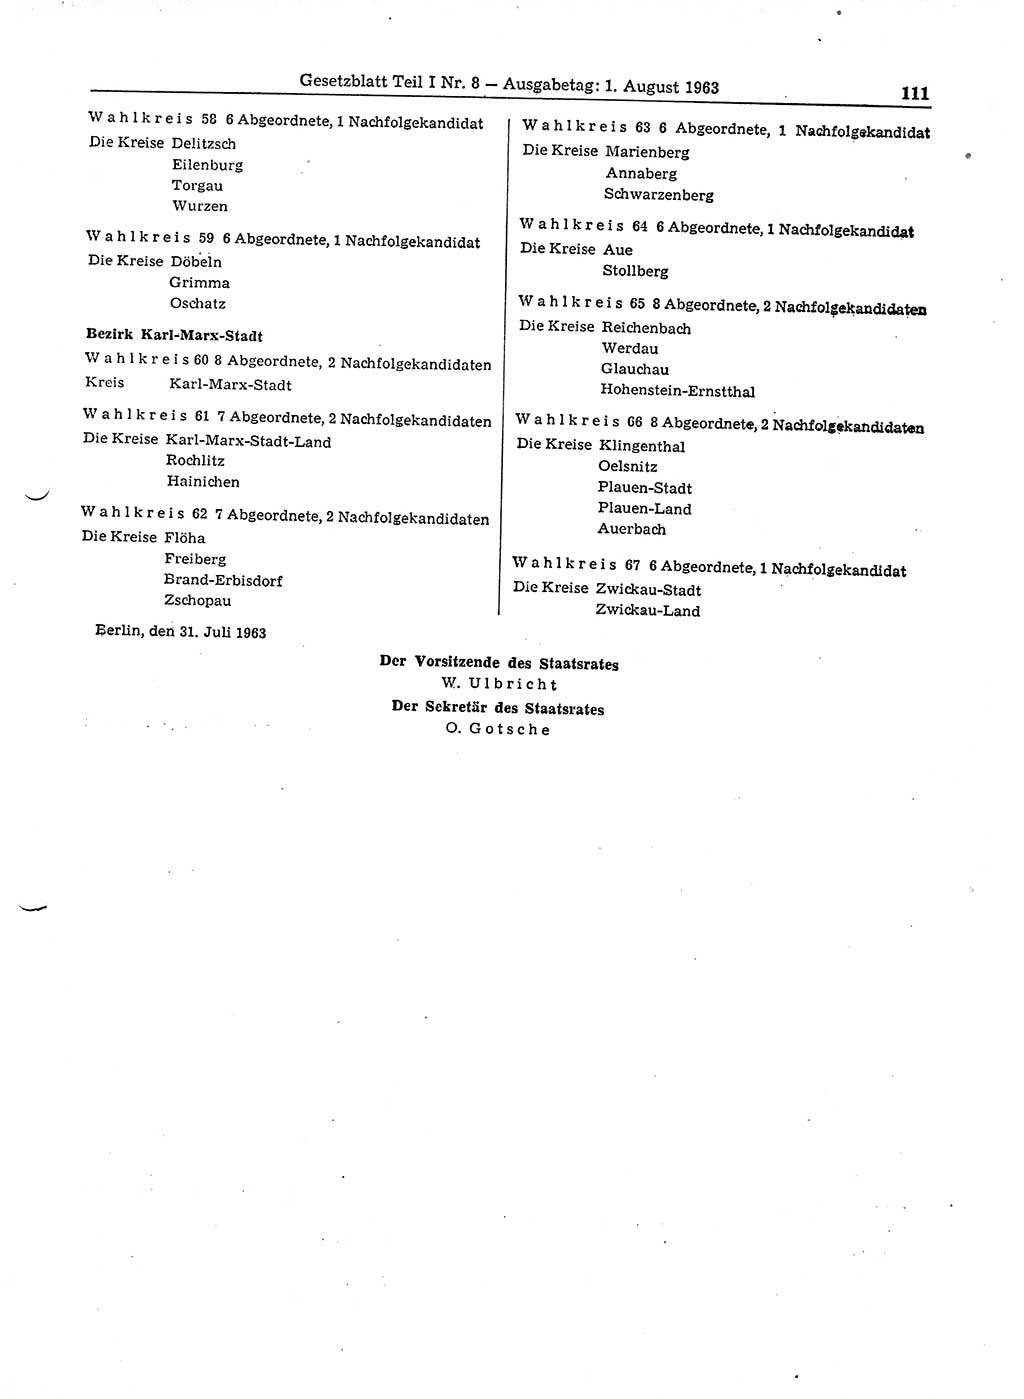 Gesetzblatt (GBl.) der Deutschen Demokratischen Republik (DDR) Teil Ⅰ 1963, Seite 111 (GBl. DDR Ⅰ 1963, S. 111)